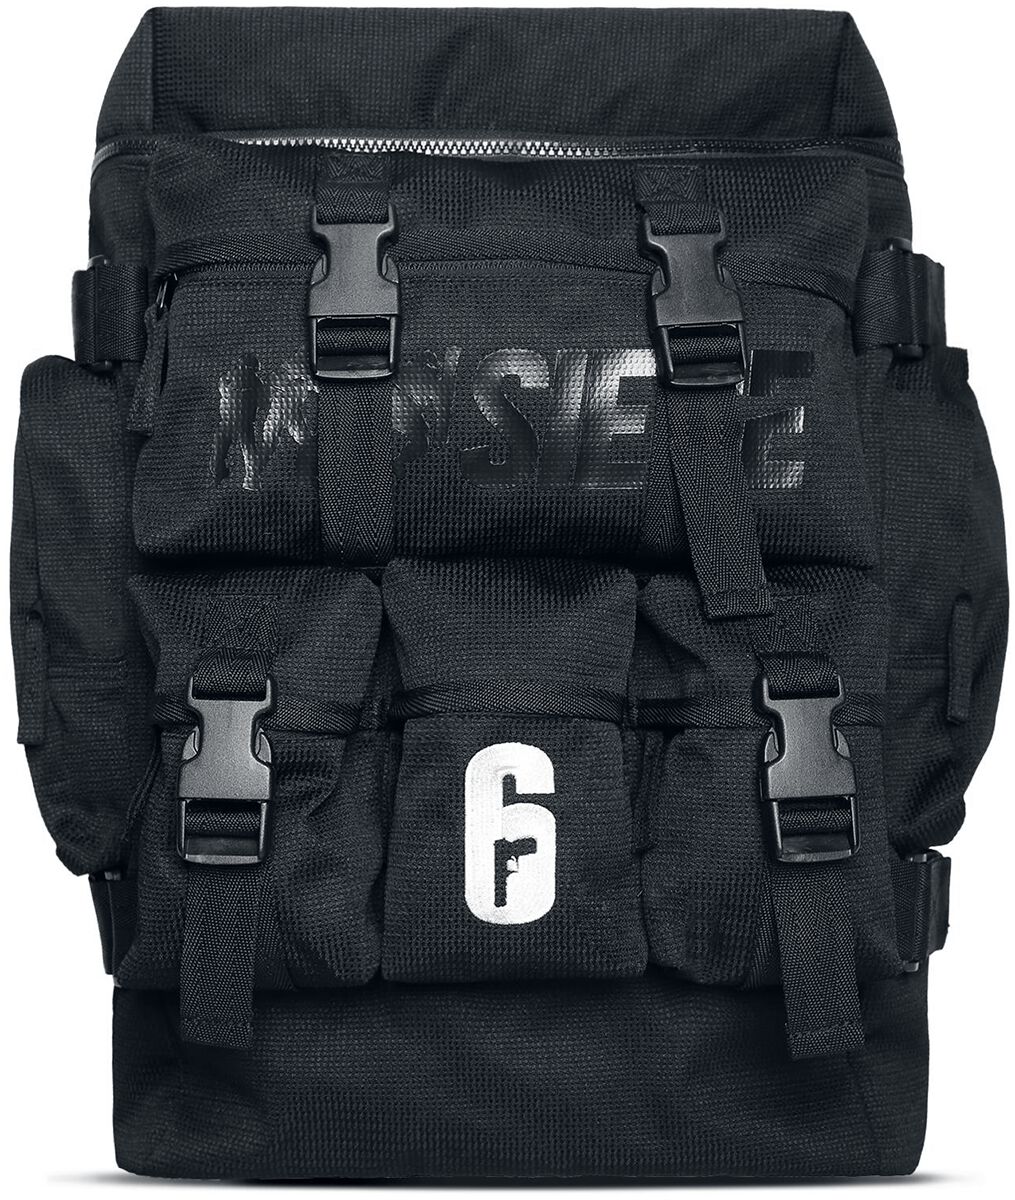 Six Siege Operator Backpack Backpack black